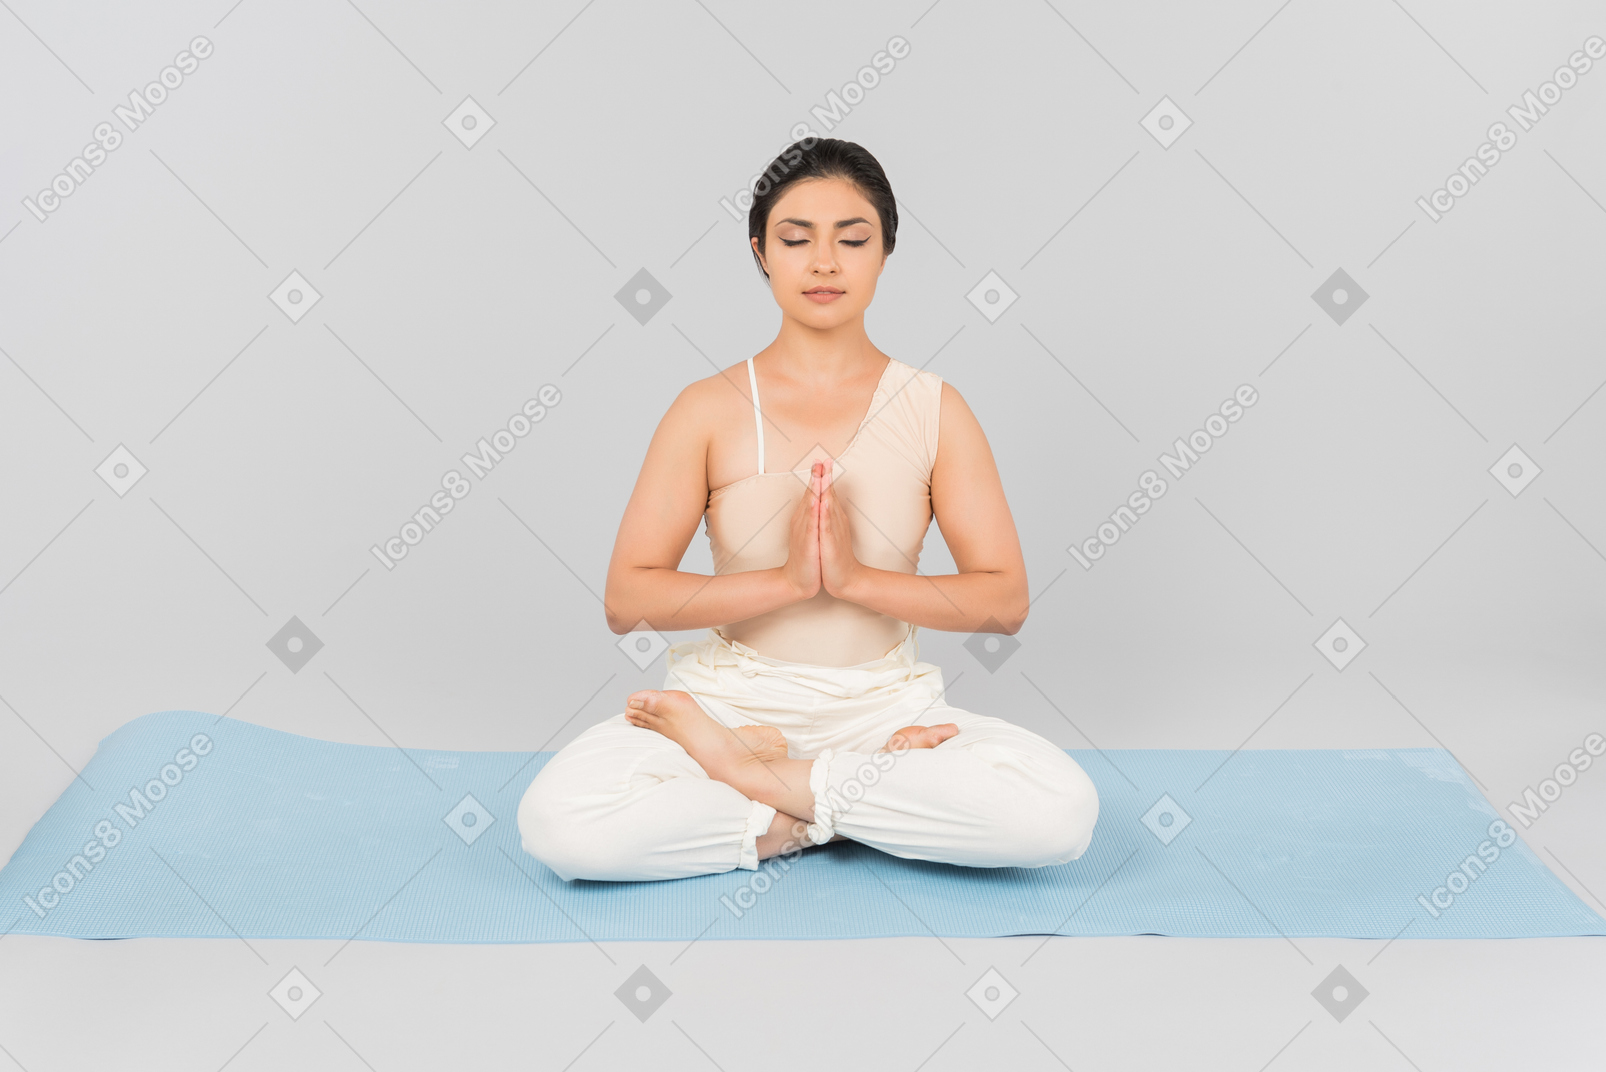 Jeune femme indienne assise sur un tapis de yoga avec les jambes croisées, les mains jointes et les yeux fermés